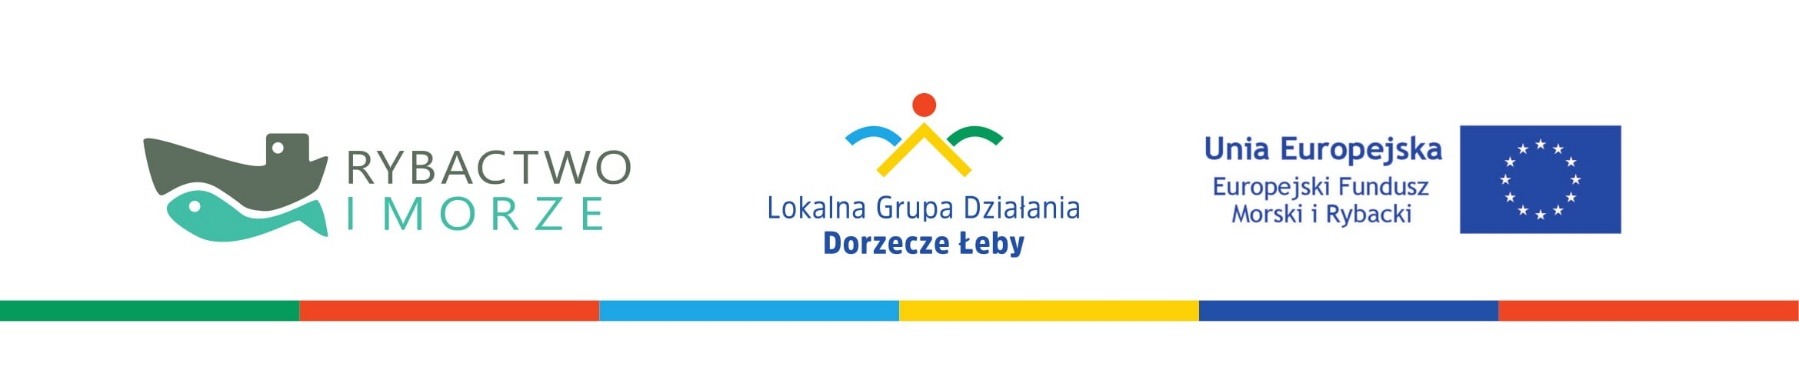 Logotypy Lokalnej Grupy Działania Dorzecze Leby